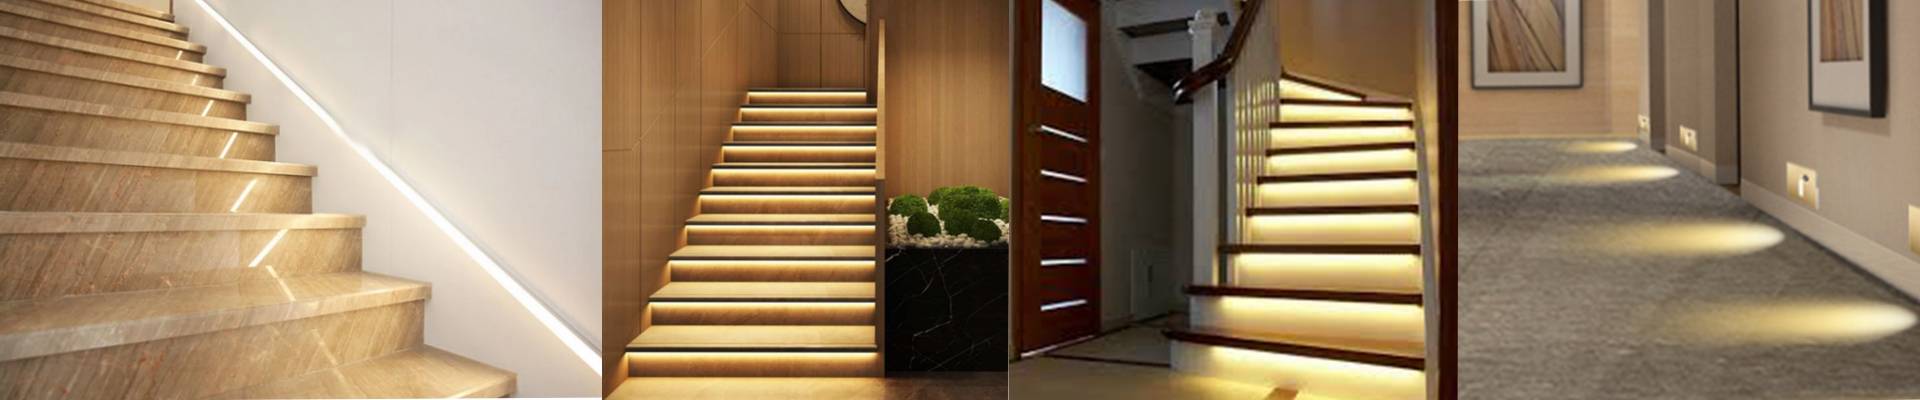 LED Stair Lighting